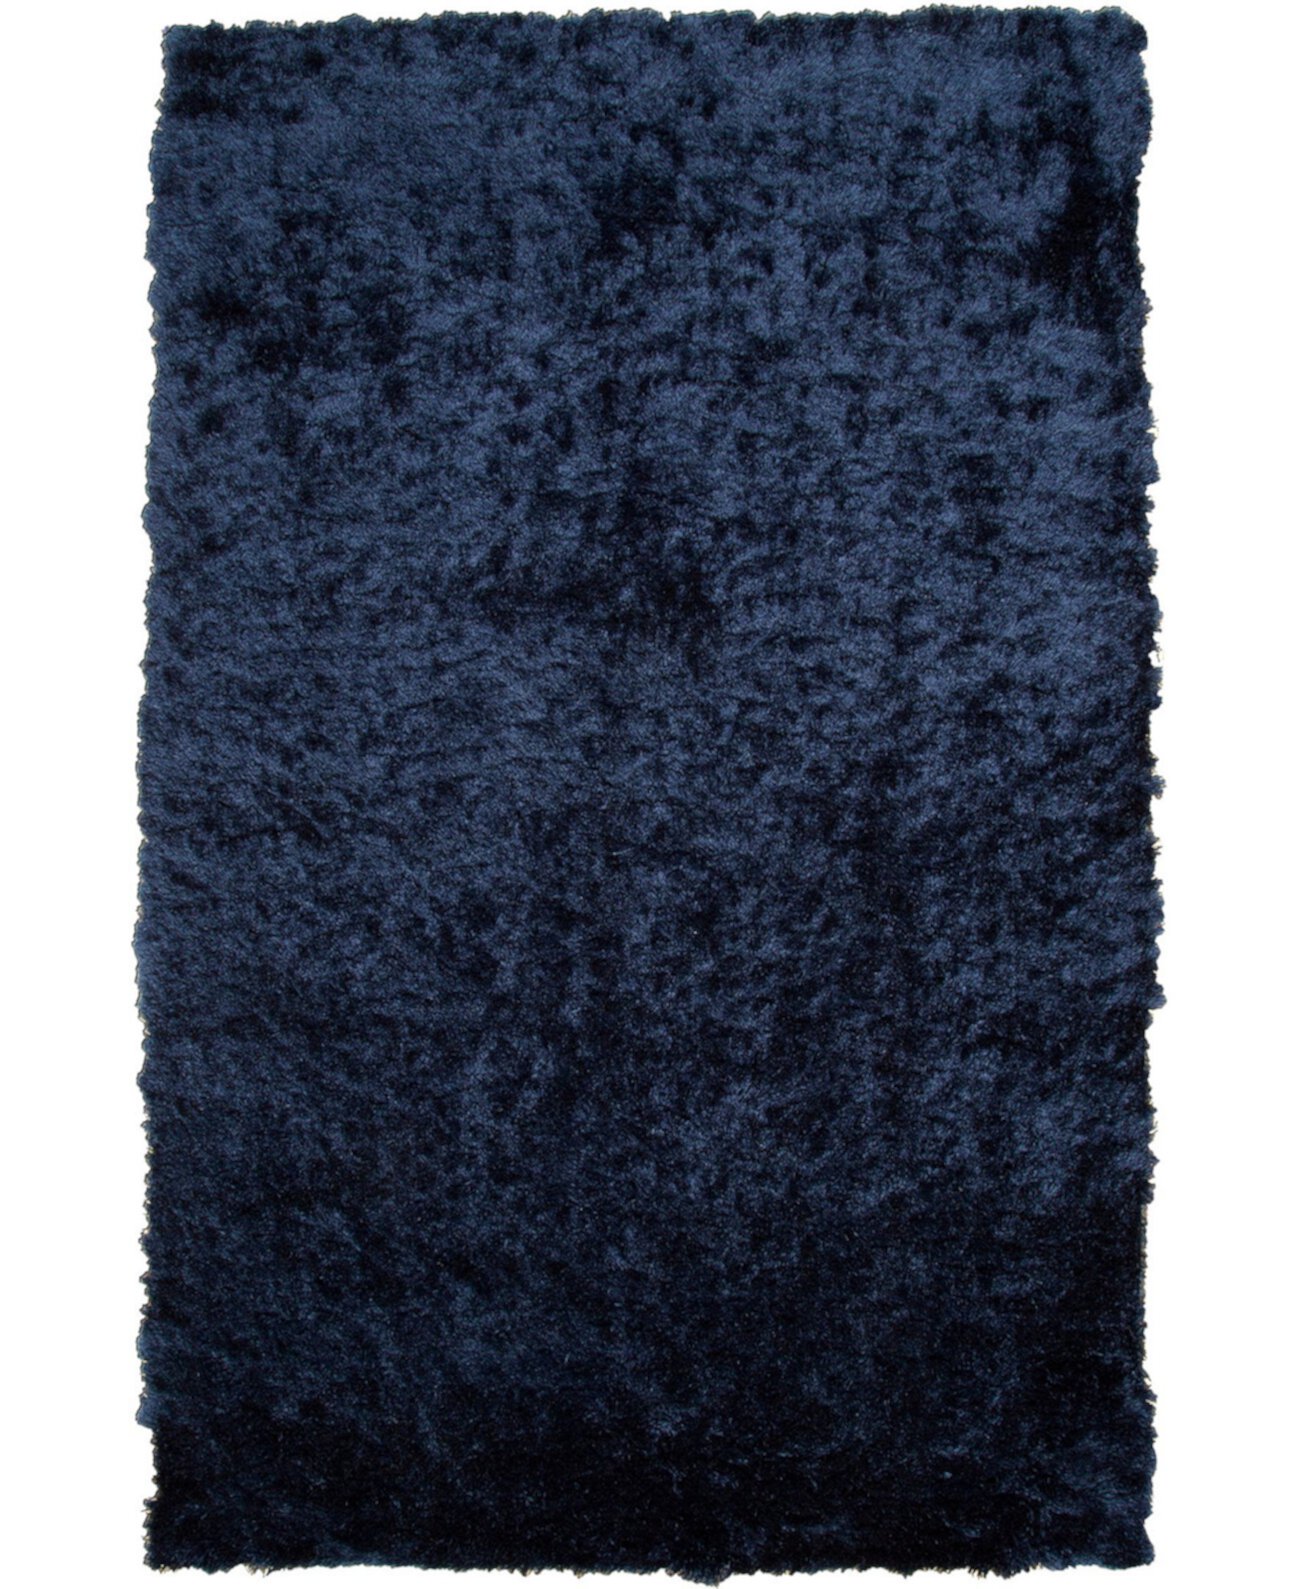 Whitney R4550 Темно-синий коврик размером 2 x 3 фута Feizy